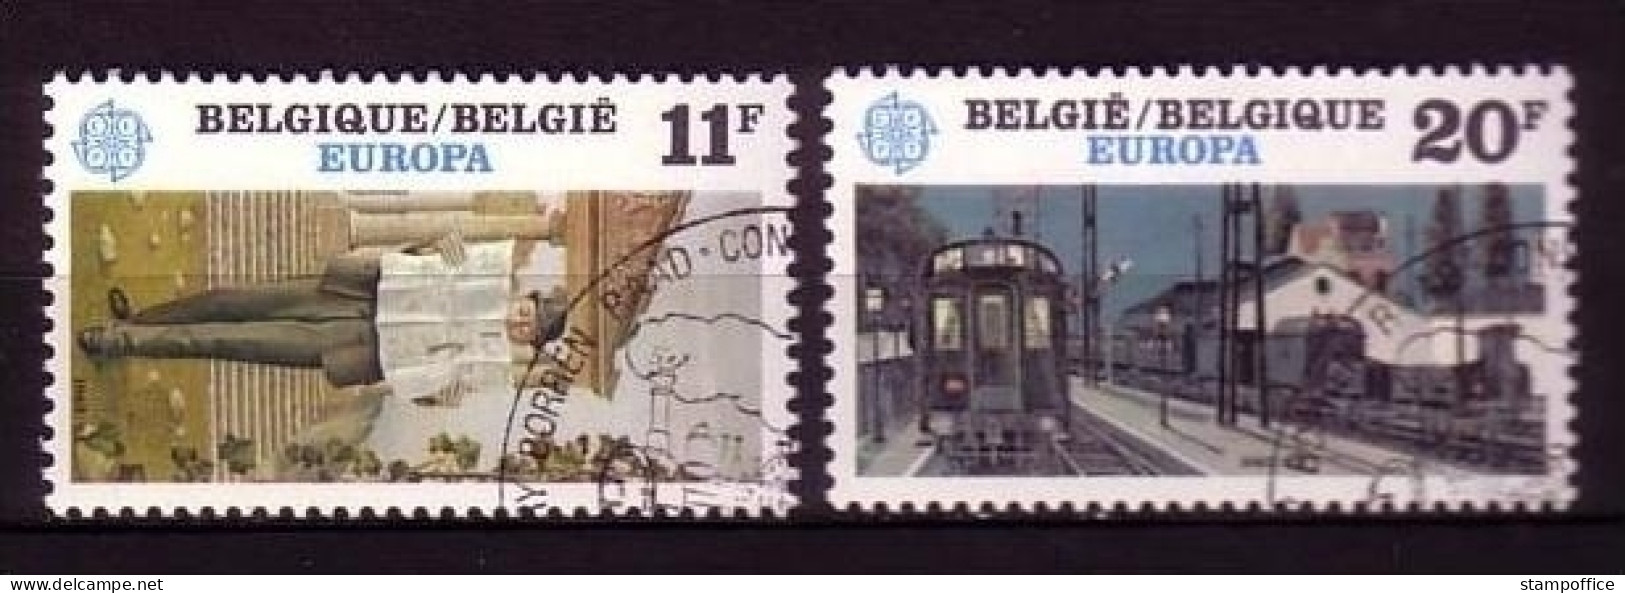 BELGIEN MI-NR. 2144-2145 GESTEMPELT(USED) EUROPA 1983 GROSSE WERKE EISENBAHN - 1983